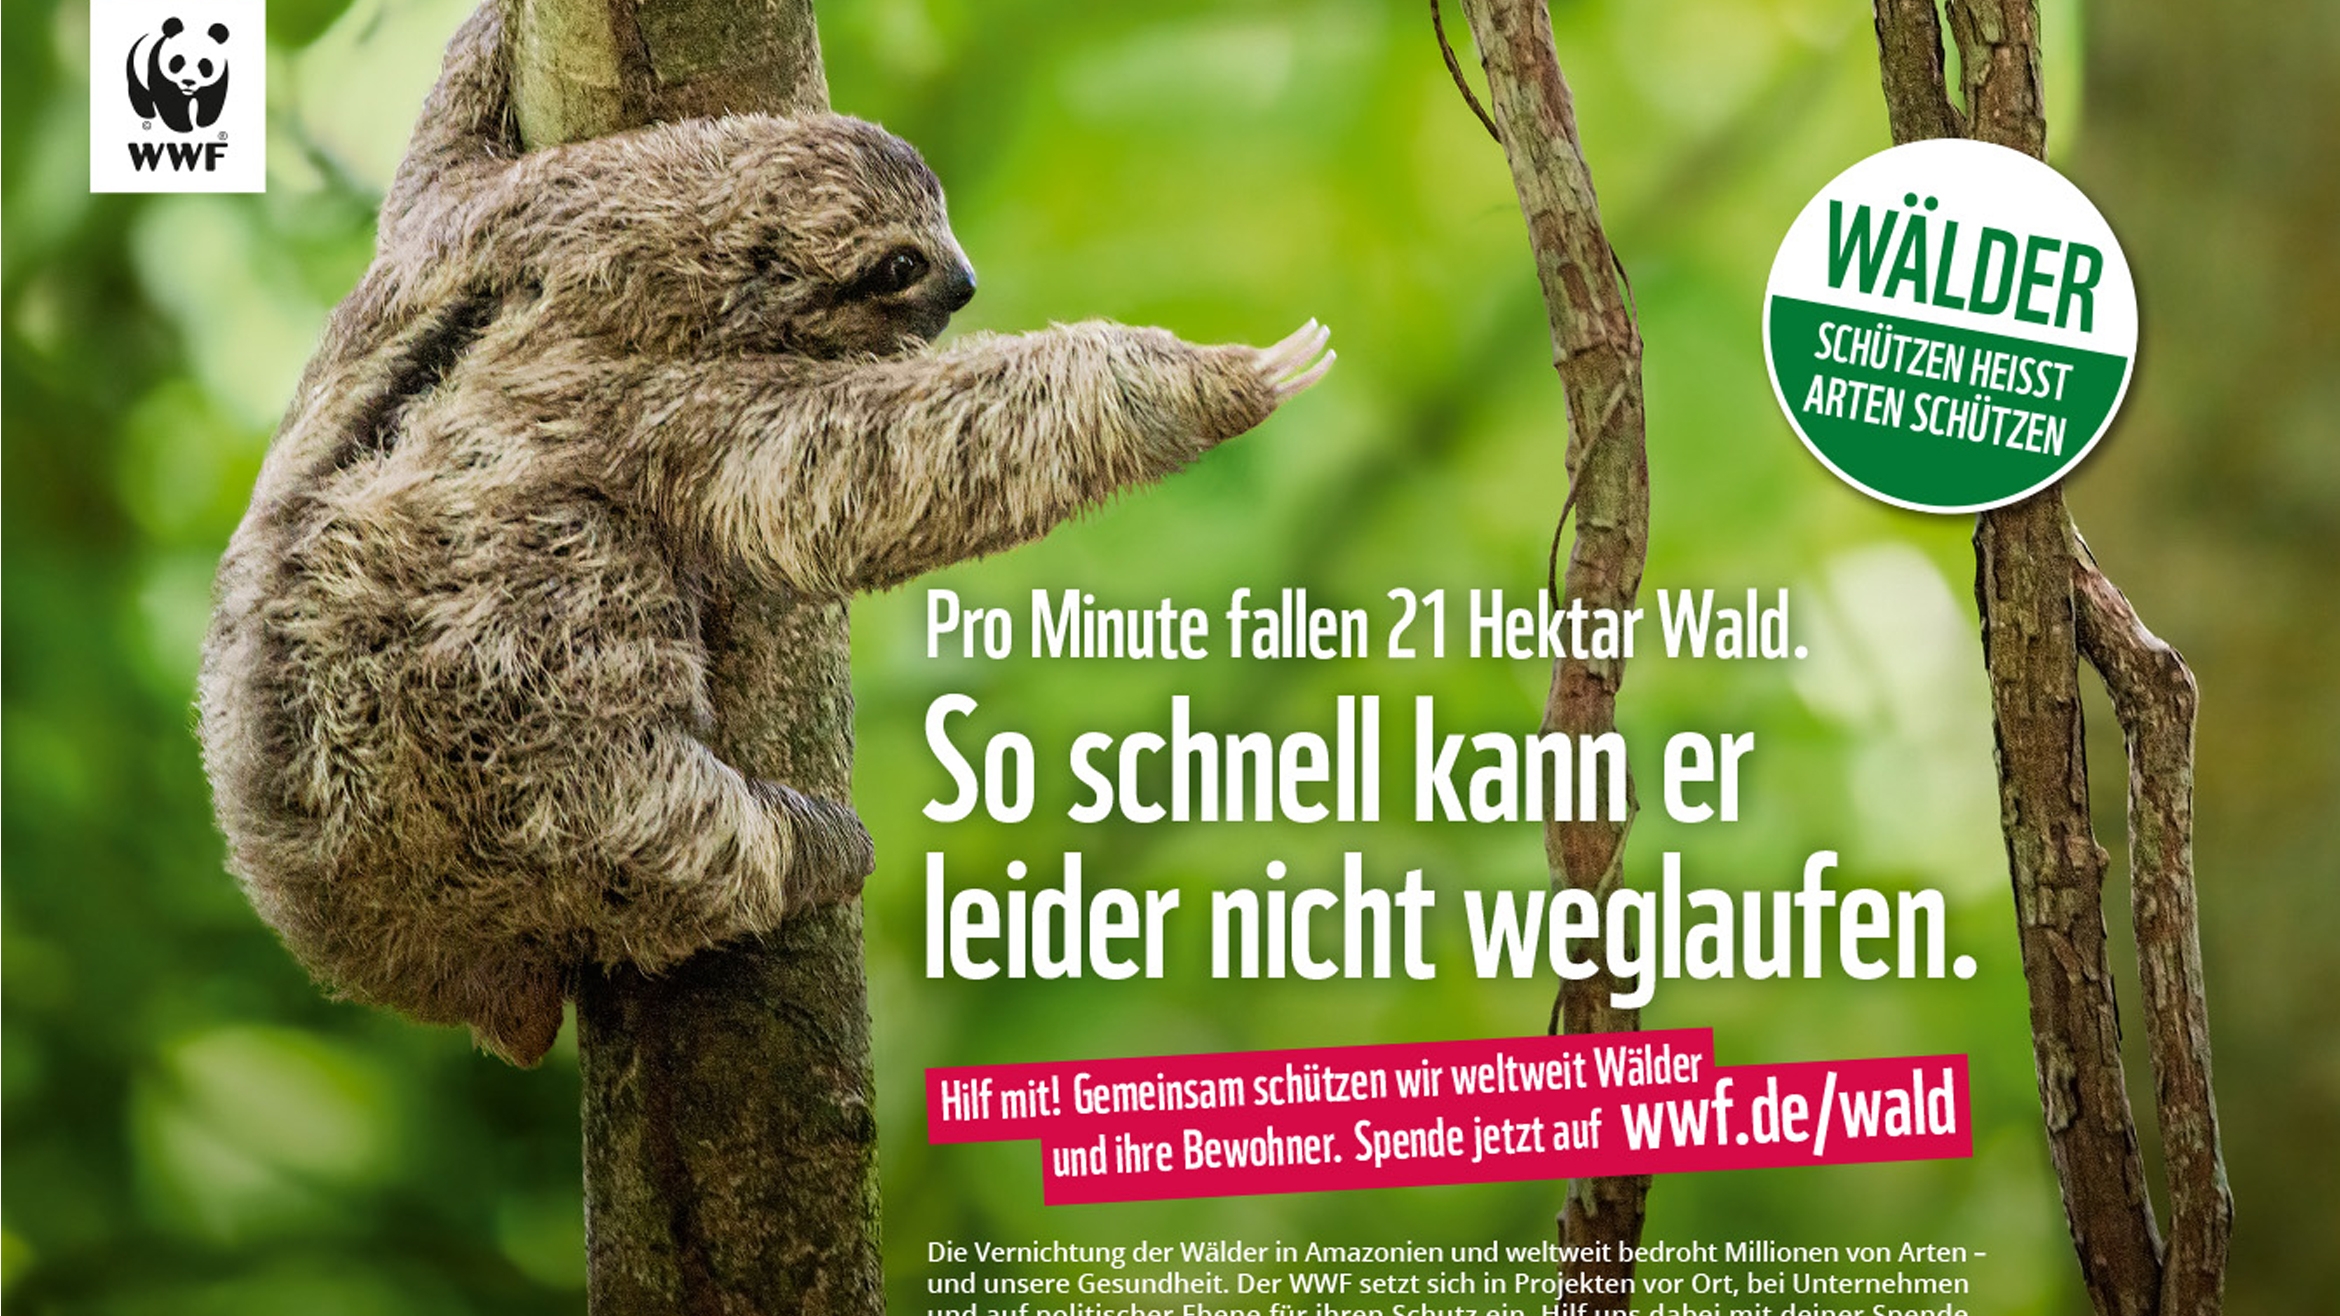 Das Faultier steht in der Kampagne stellvertretend für alle tierischen Waldbewohner weltweit. Es könnte aber auch als Fingerzeig auf die Menschen gedeutet werden –